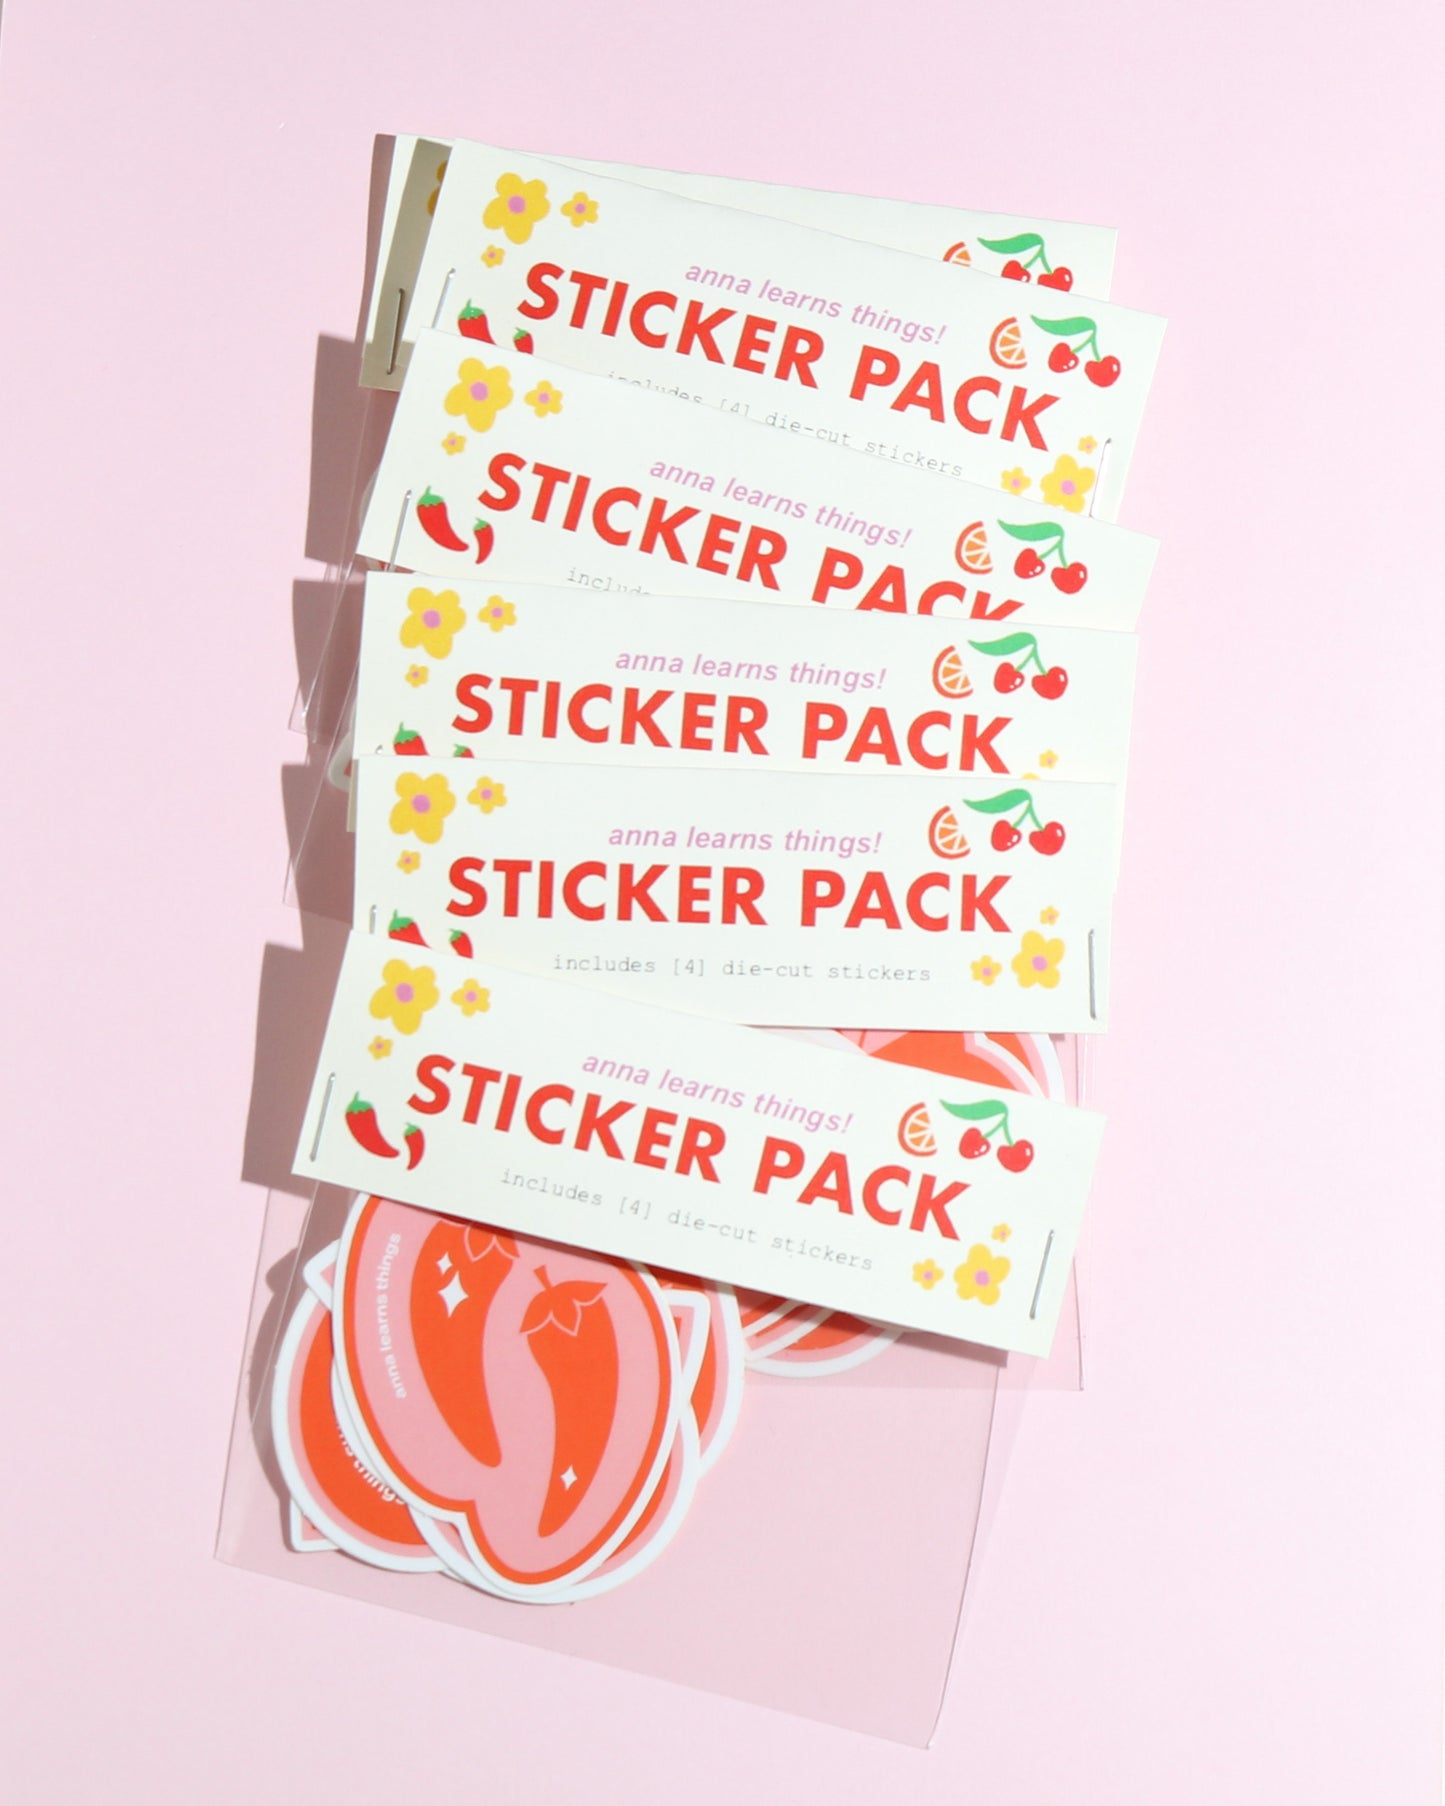 Sticker Pack!